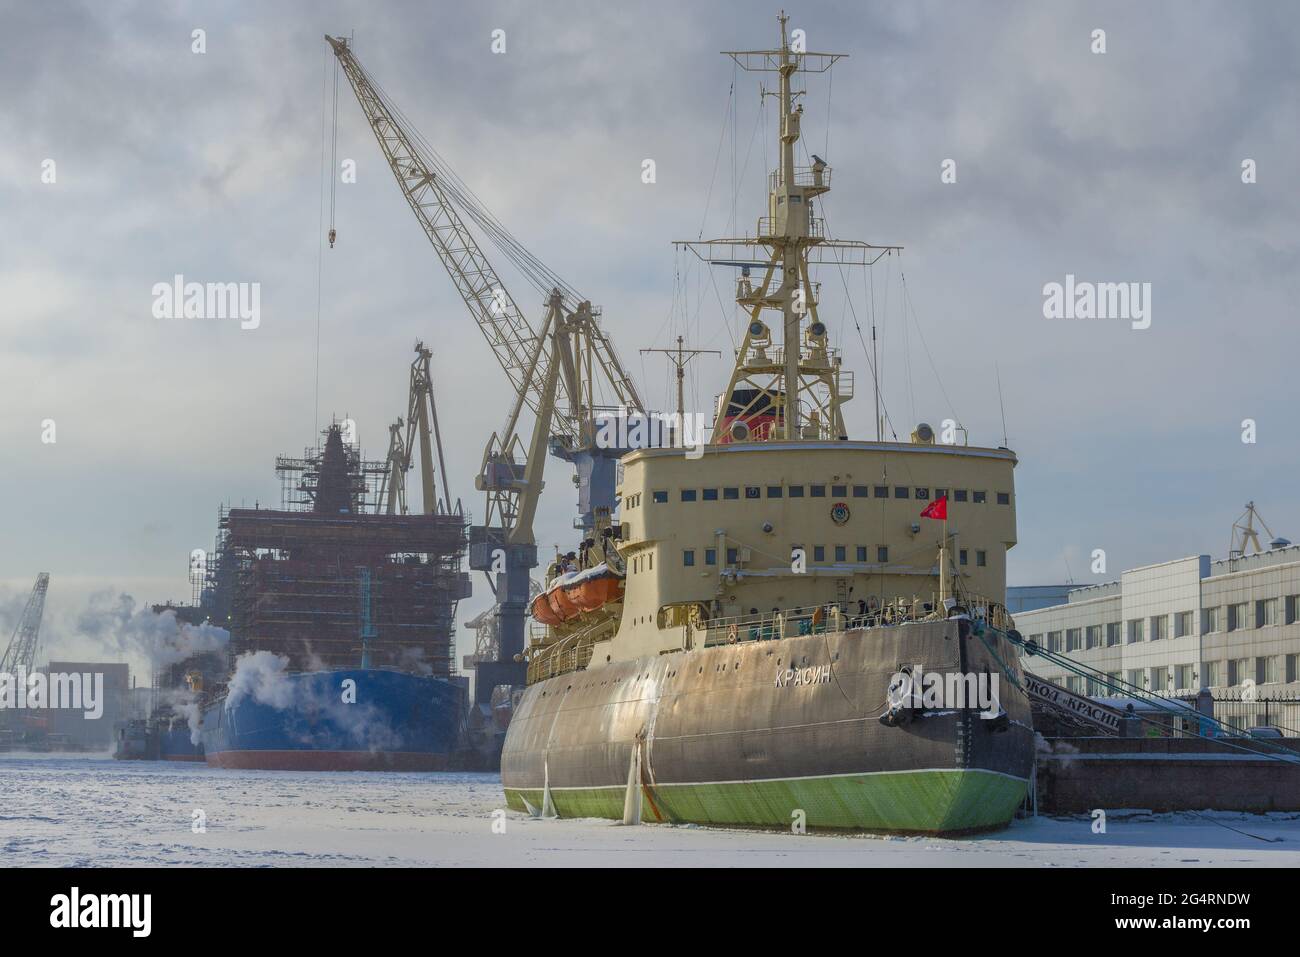 ST. PETERSBURGO, RUSIA - 15 DE FEBRERO de 2021: El viejo rompehielos Krasin contra el telón de fondo del astillero báltico en un día helado de febrero Foto de stock